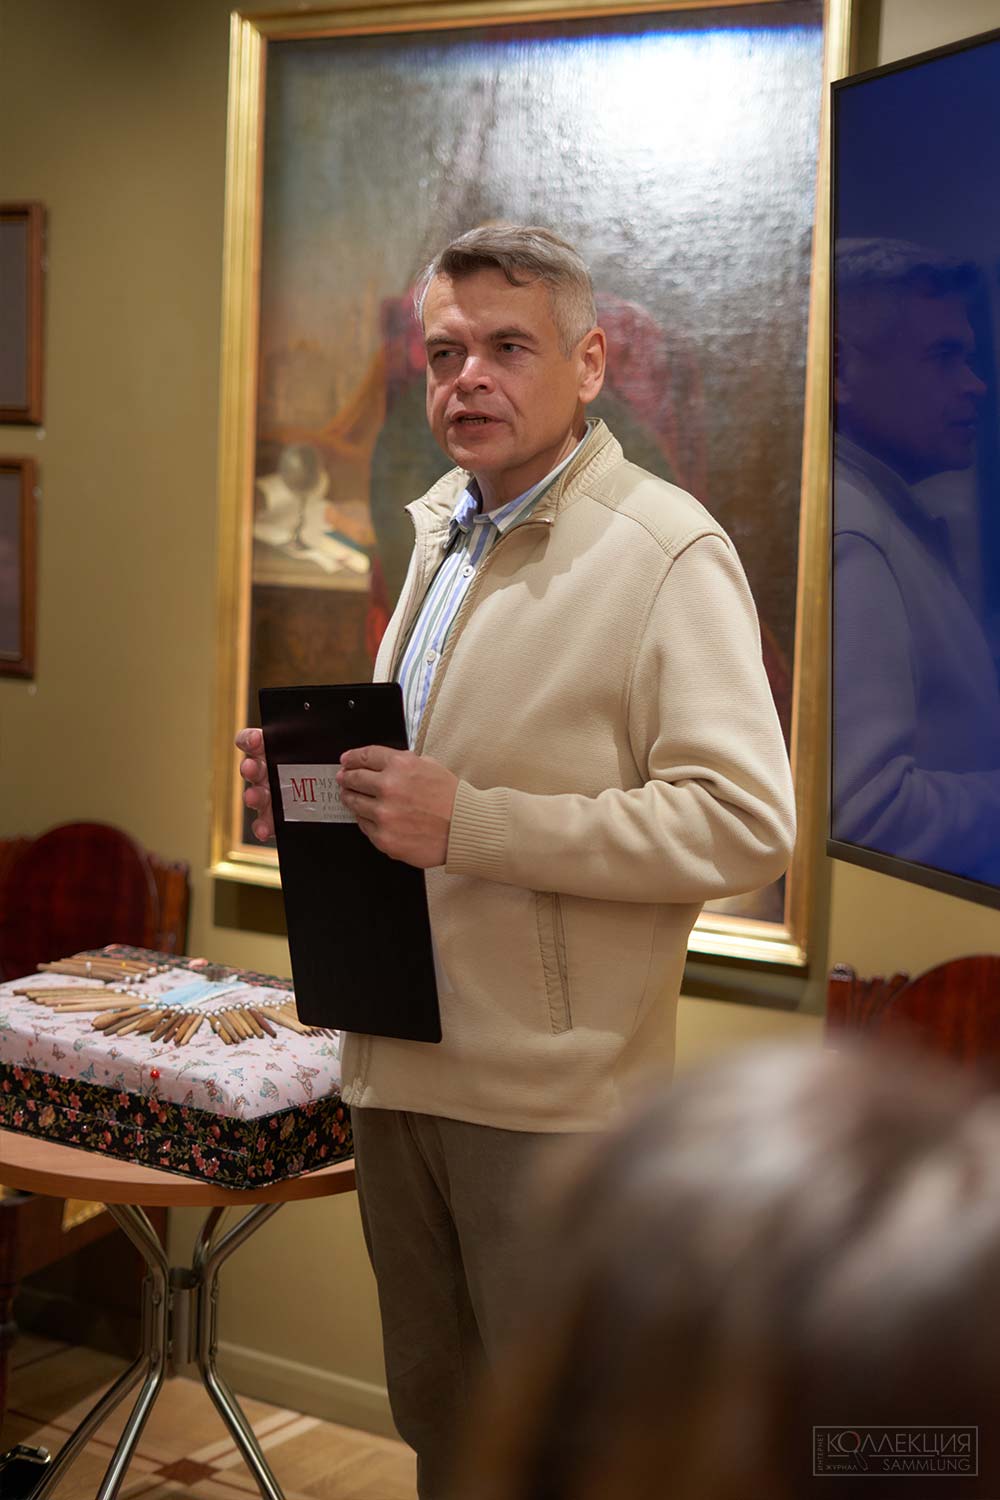 Алексей Сидельников, главный редактор журнала "Коллекция"